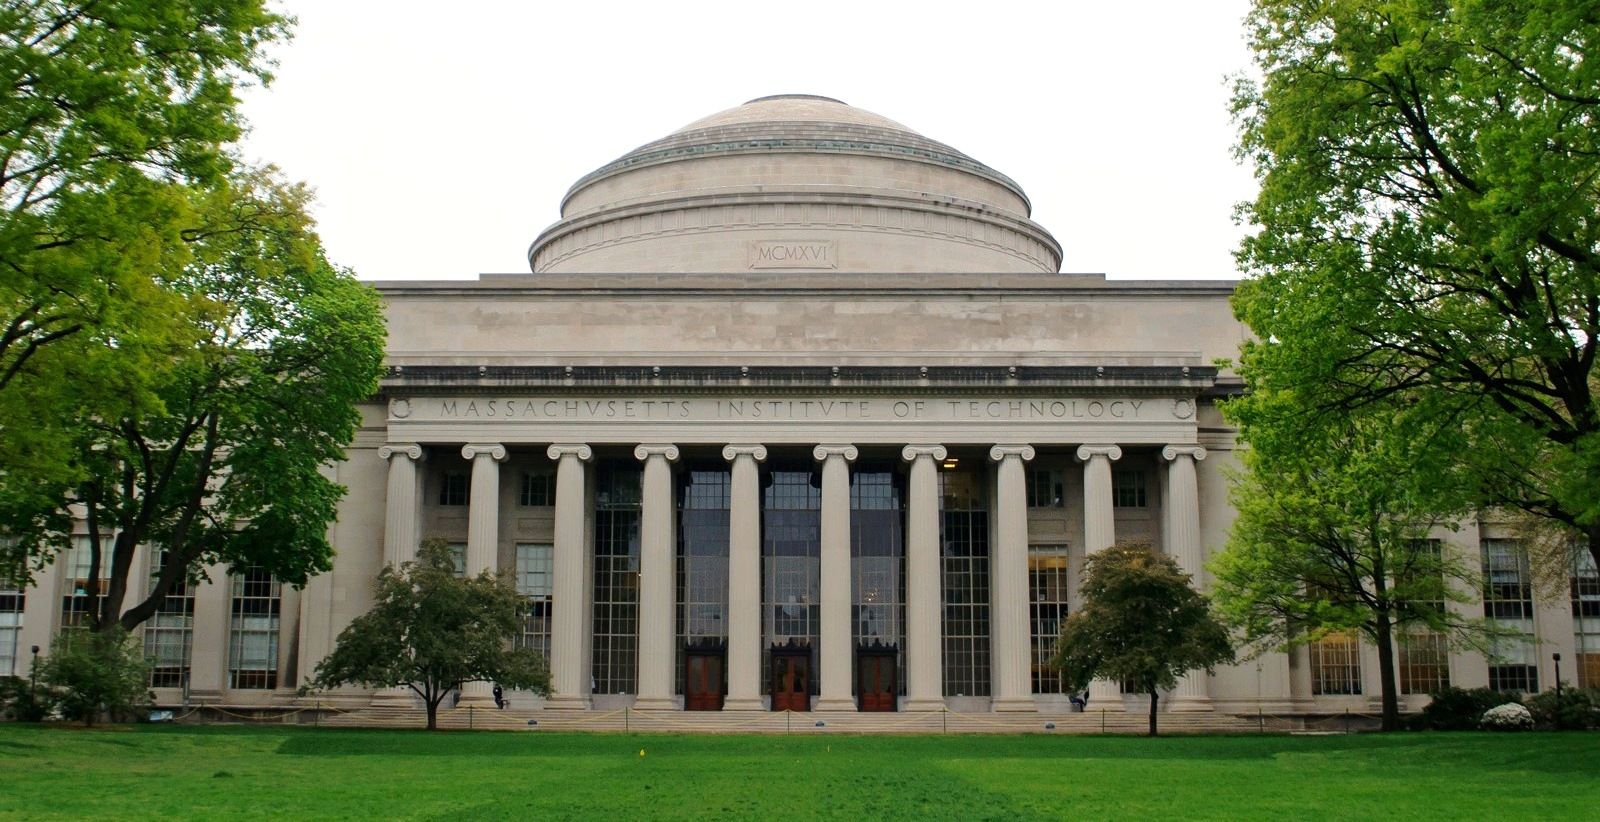 Massachusetts Institute of Technology (MIT). Massachusetts institute of technology, Best engineering universities, Massachusetts